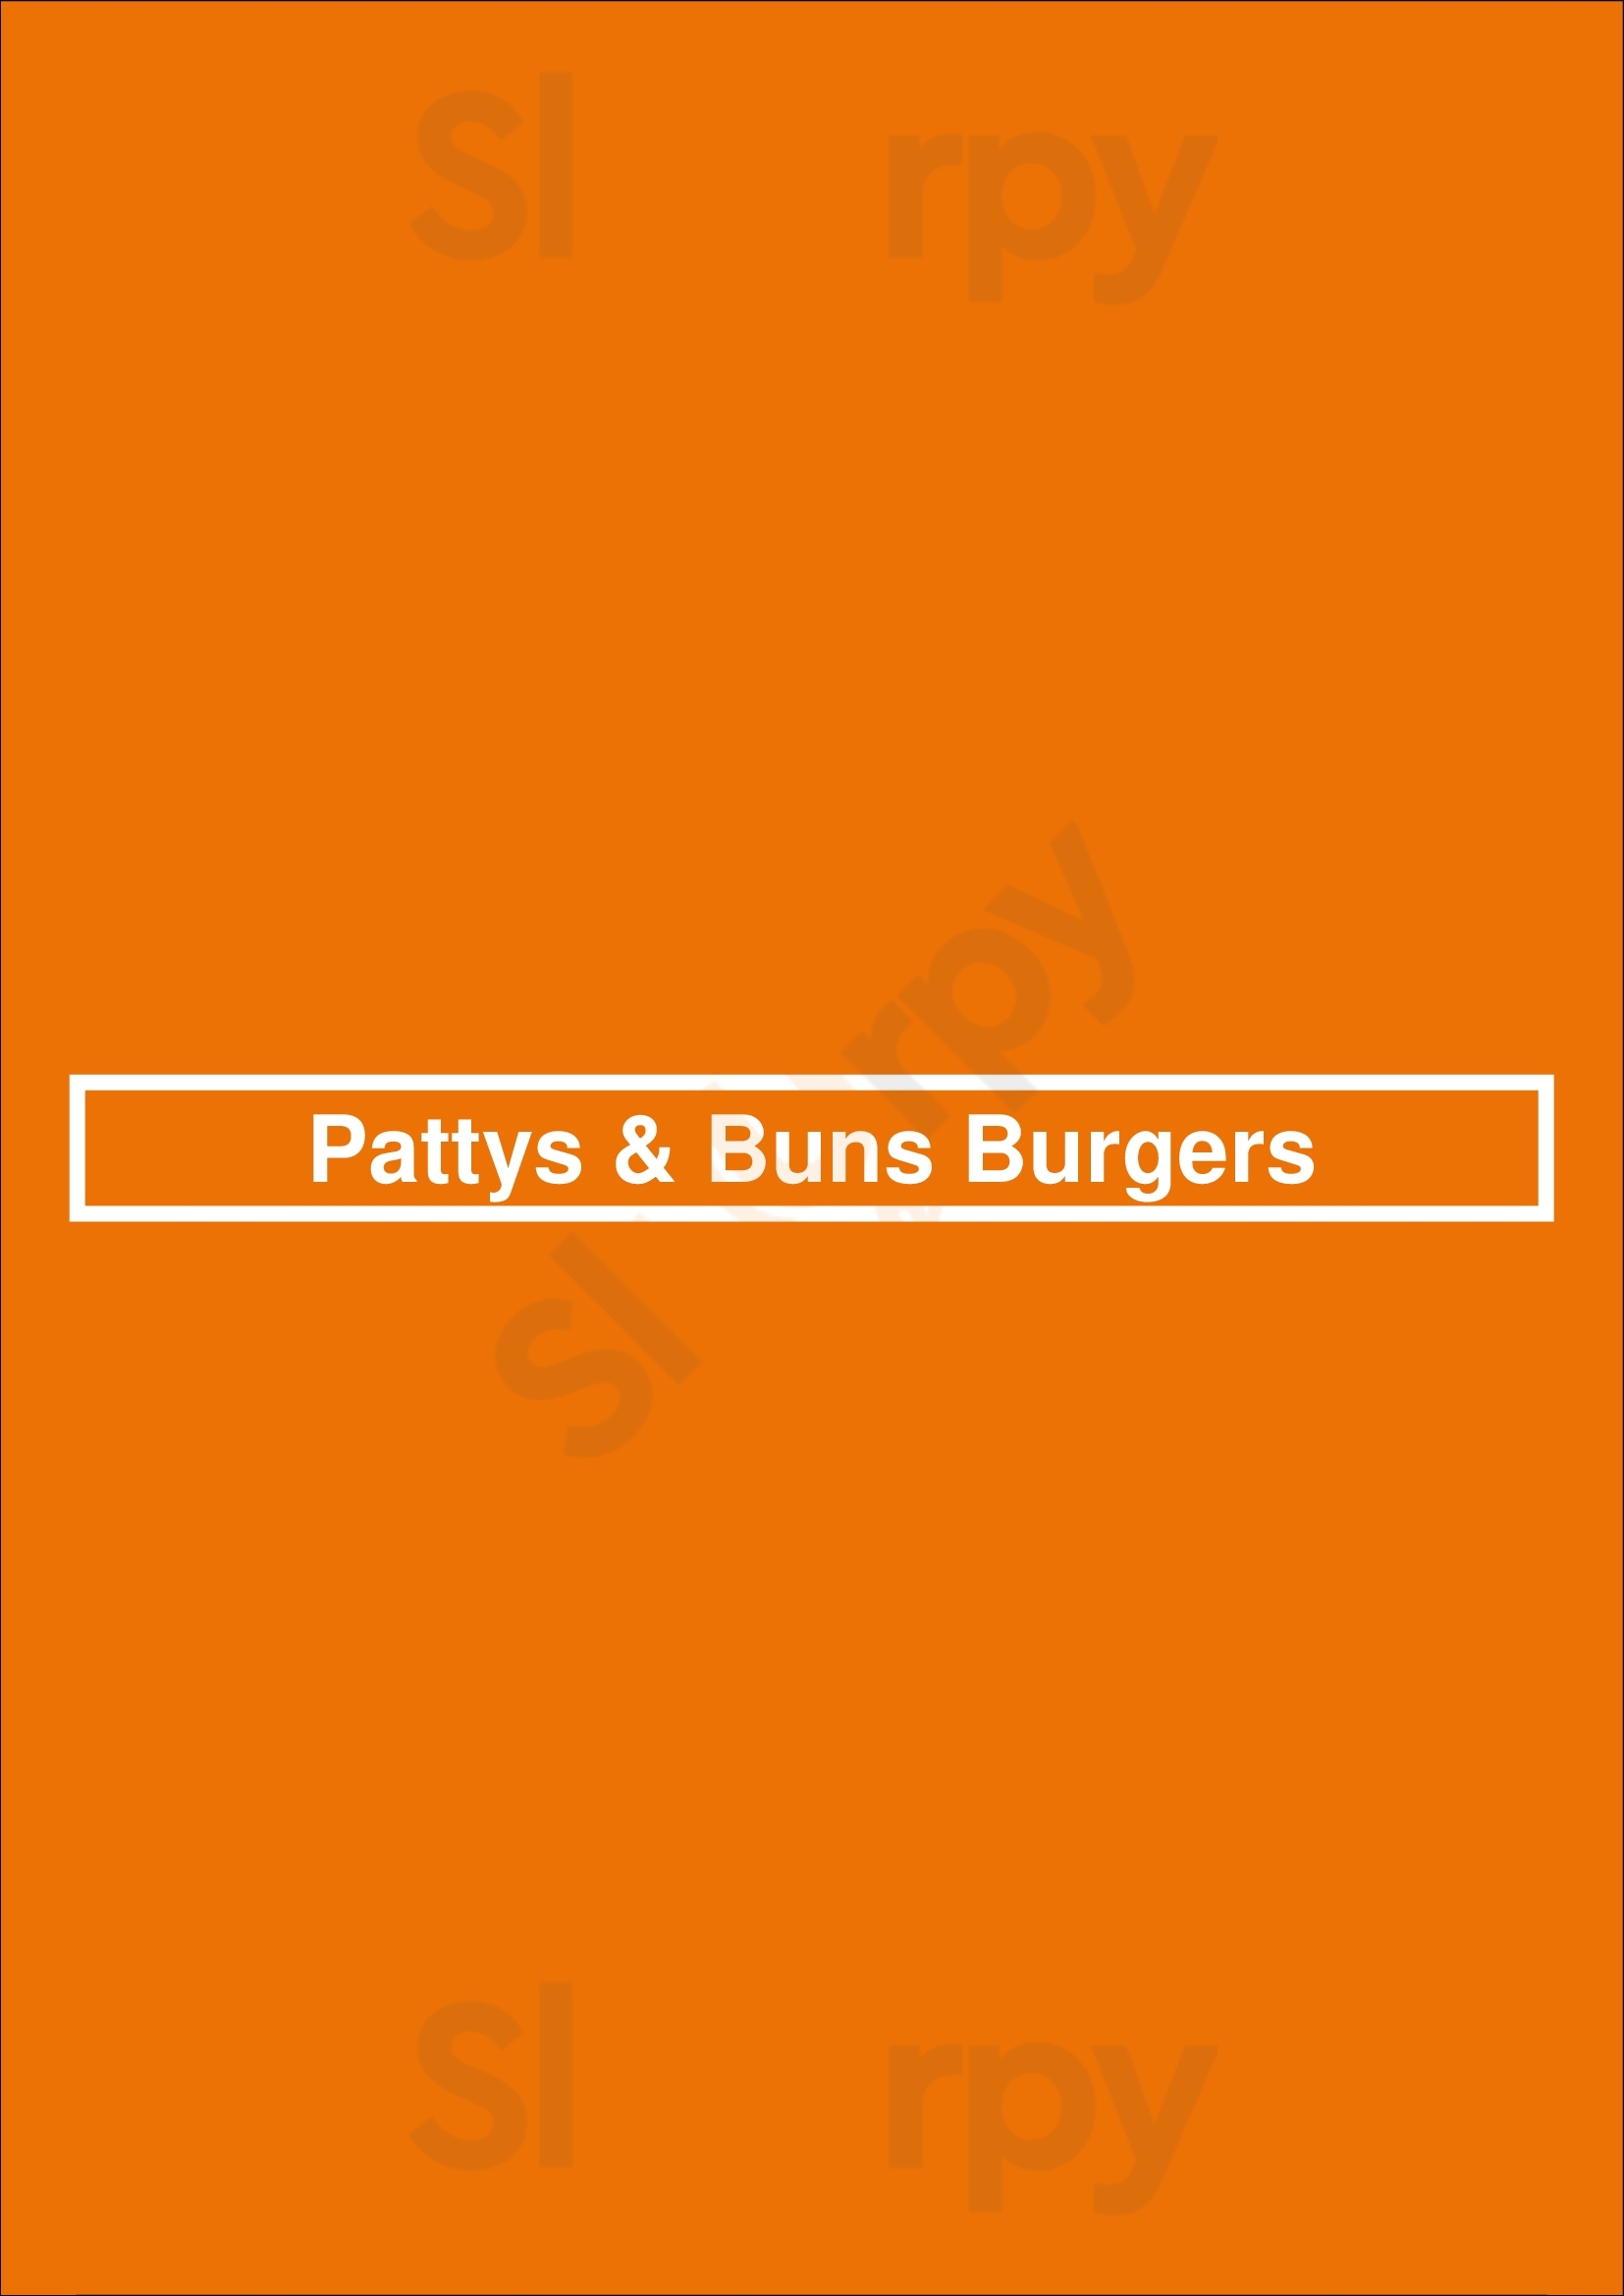 Pattys & Buns Burgers Oakland Menu - 1